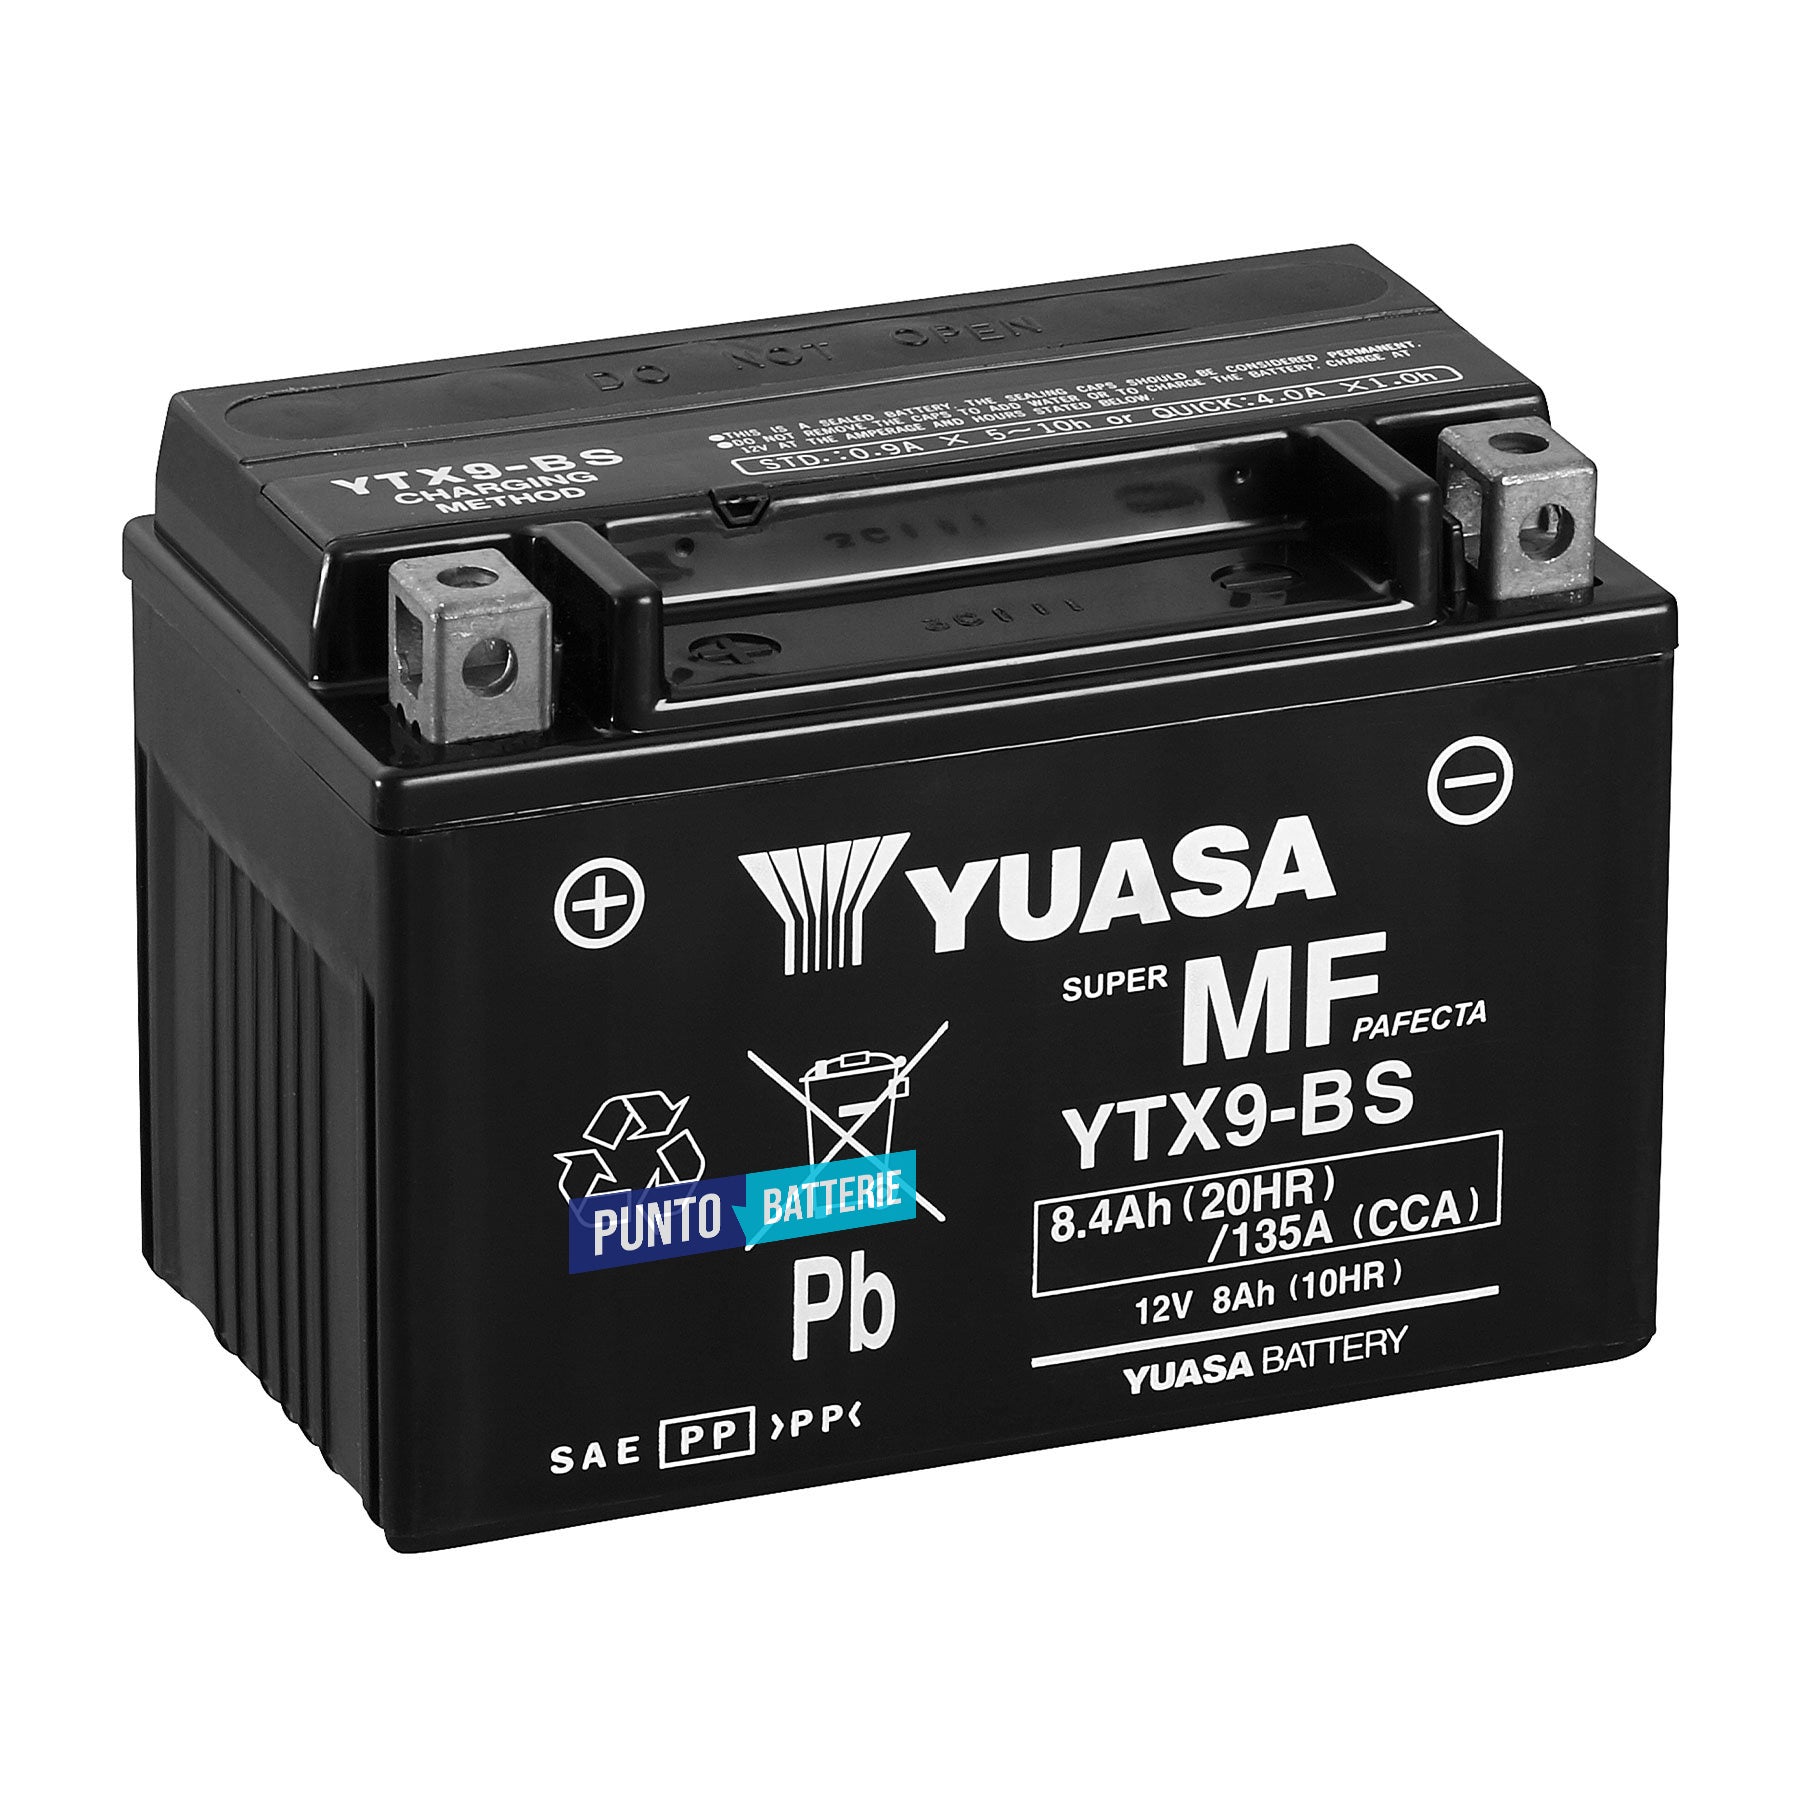 Batteria originale Yuasa YTX YTX9-BS, dimensioni 152 x 87 x 107, polo positivo a sinistra, 12 volt, 8 amperora, 135 ampere. Batteria per moto, scooter e powersport.